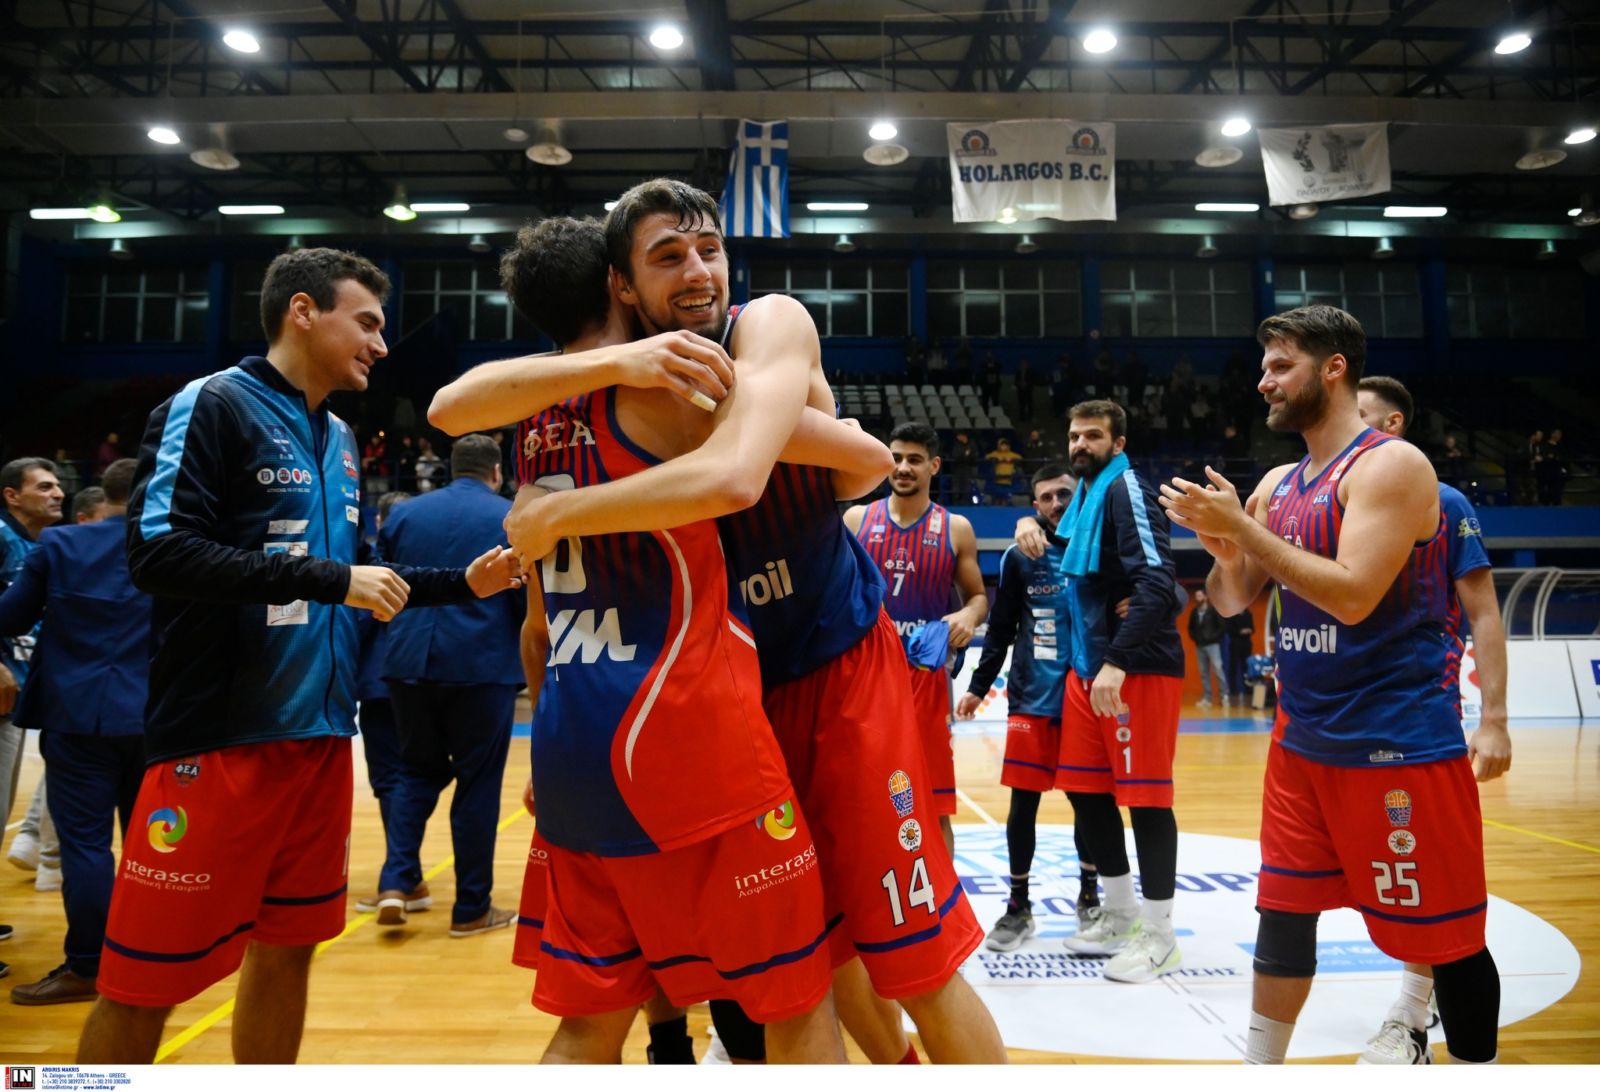 Καραχάλιος στο basketblog.gr: “Όνειρο για κάθε αθλητή να παίξει στο ΟΑΚΑ”